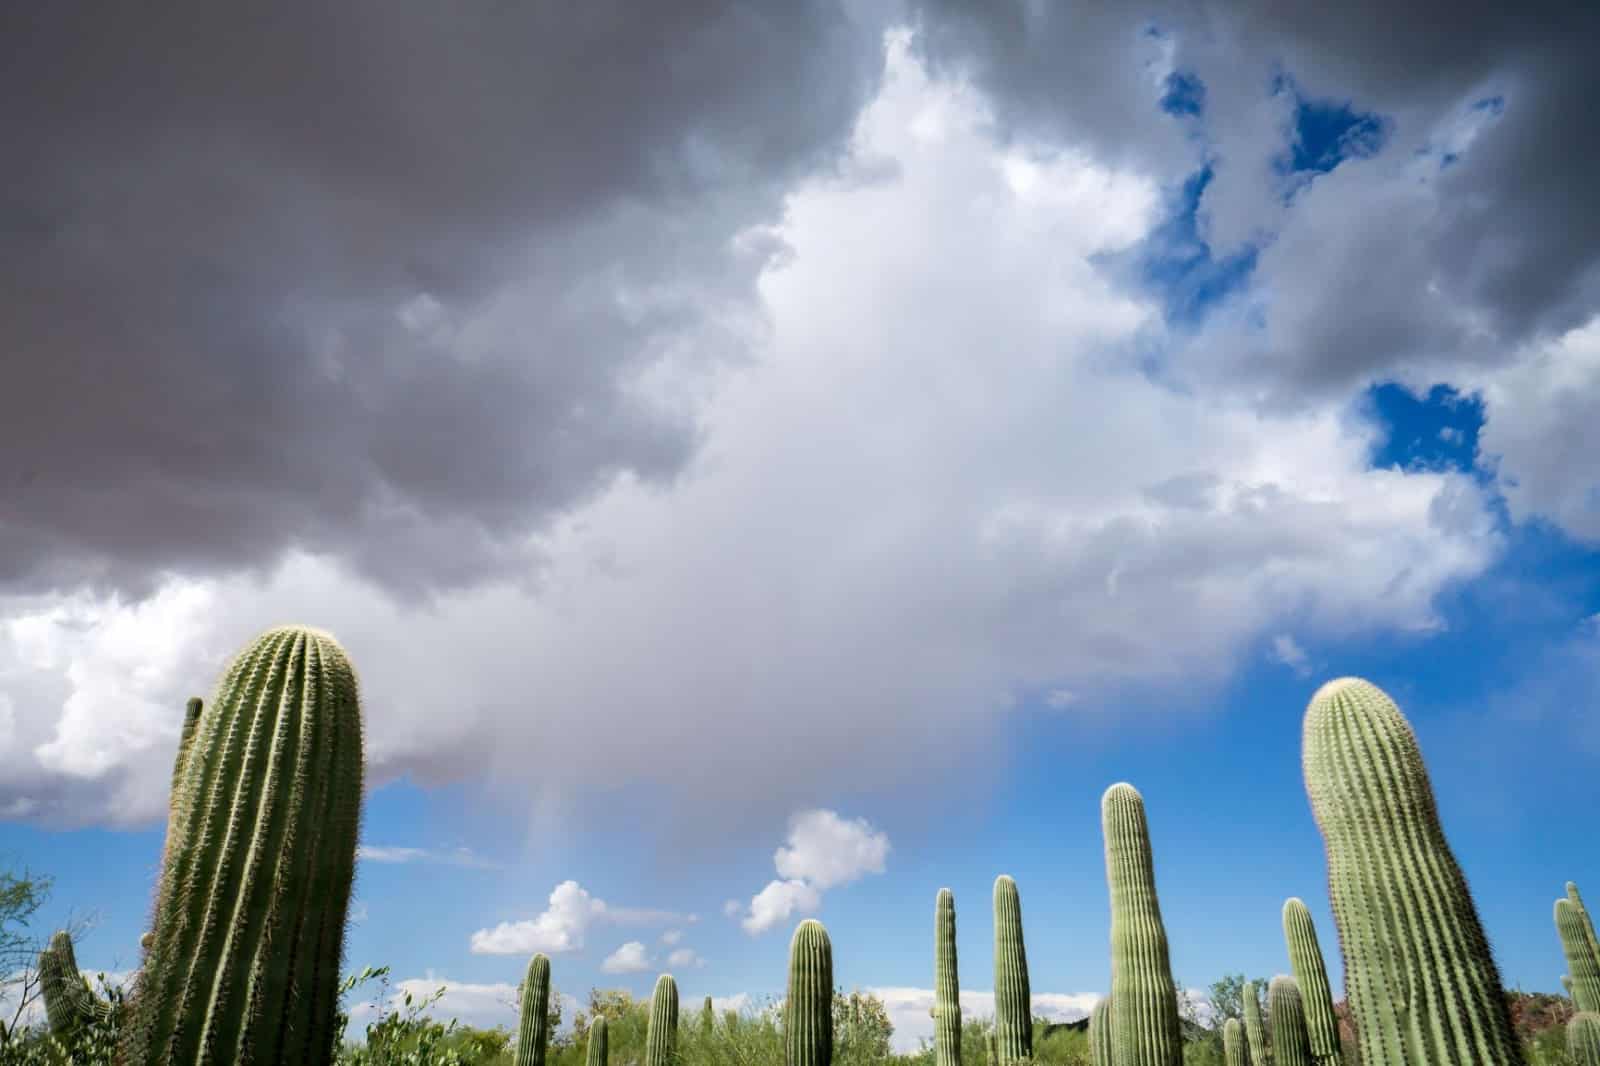 Cacti Pointing Toward Cloudy Sky